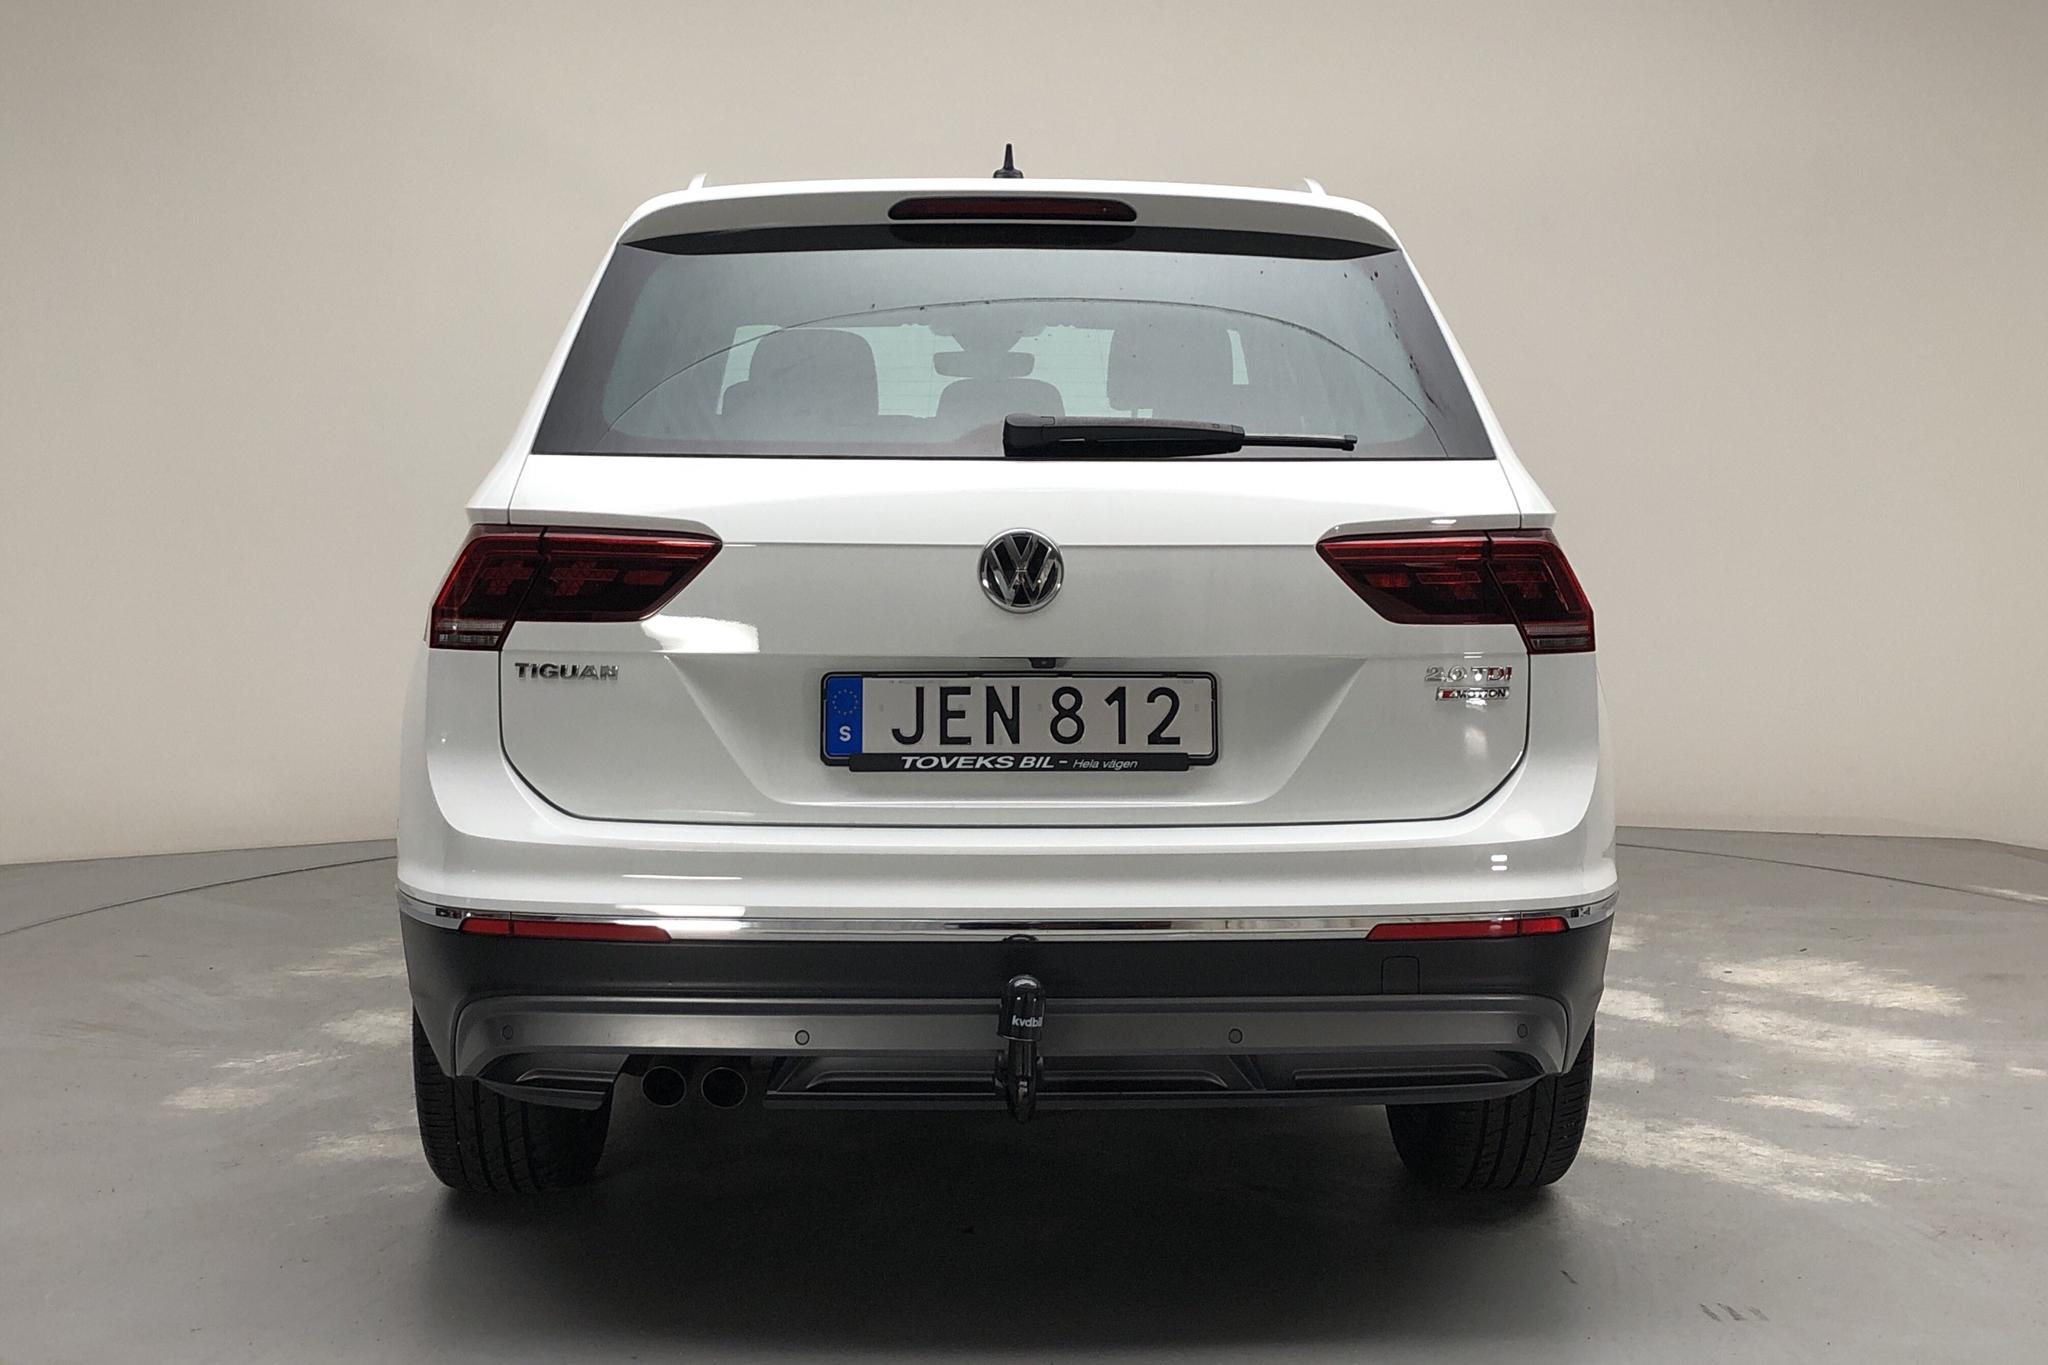 VW Tiguan 2.0 TDI 4MOTION (190hk) - 112 220 km - Automatic - white - 2018